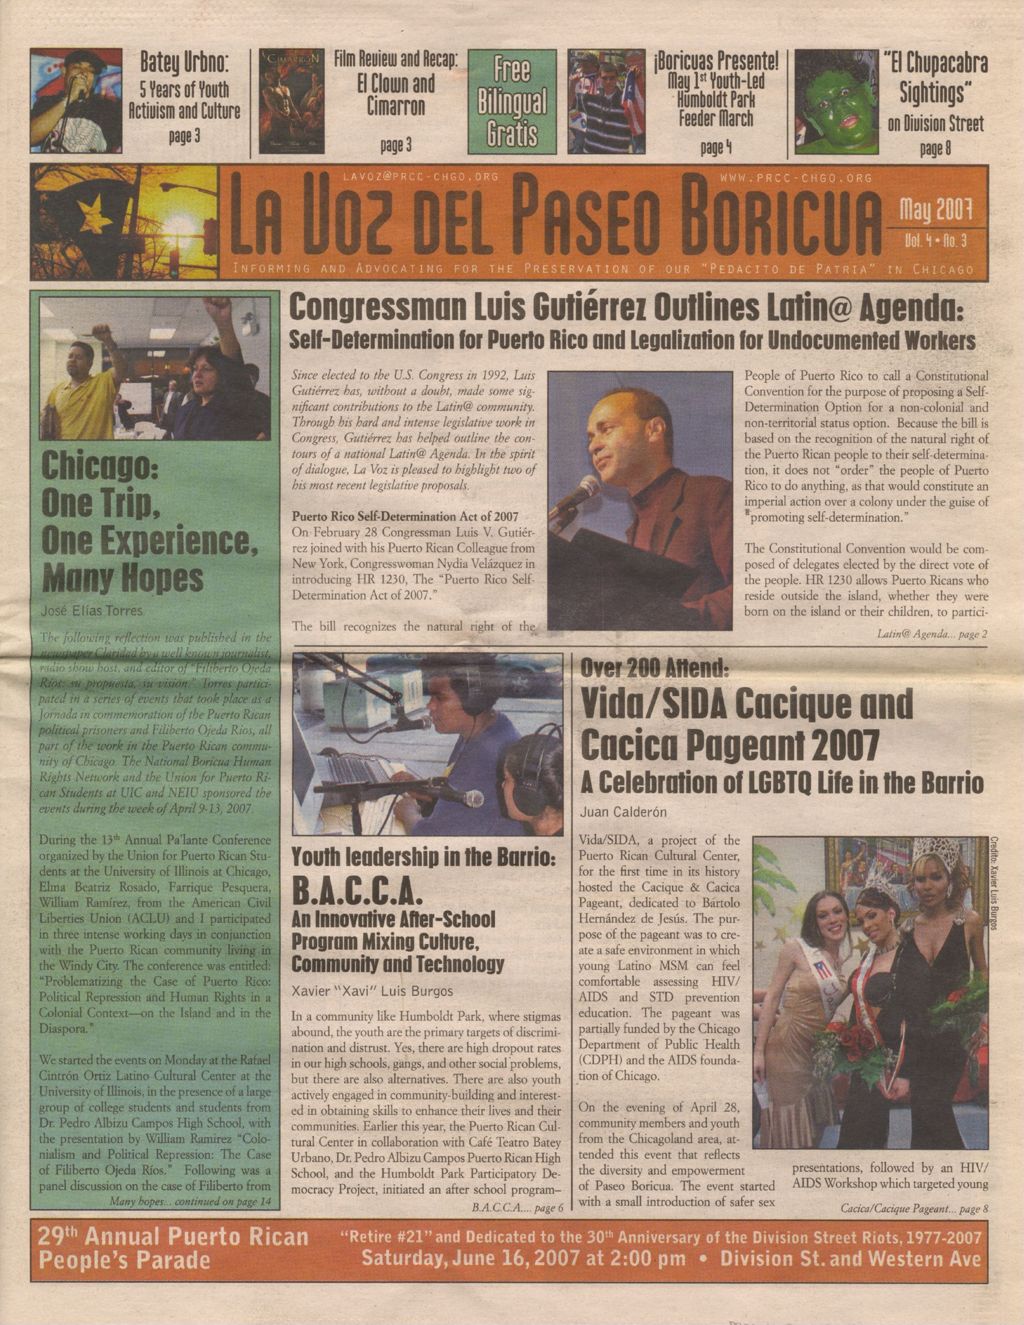 Miniature of La Voz del Paseo Boricua; May 2007; vol.4, no. 3 (Spanish and English covers)